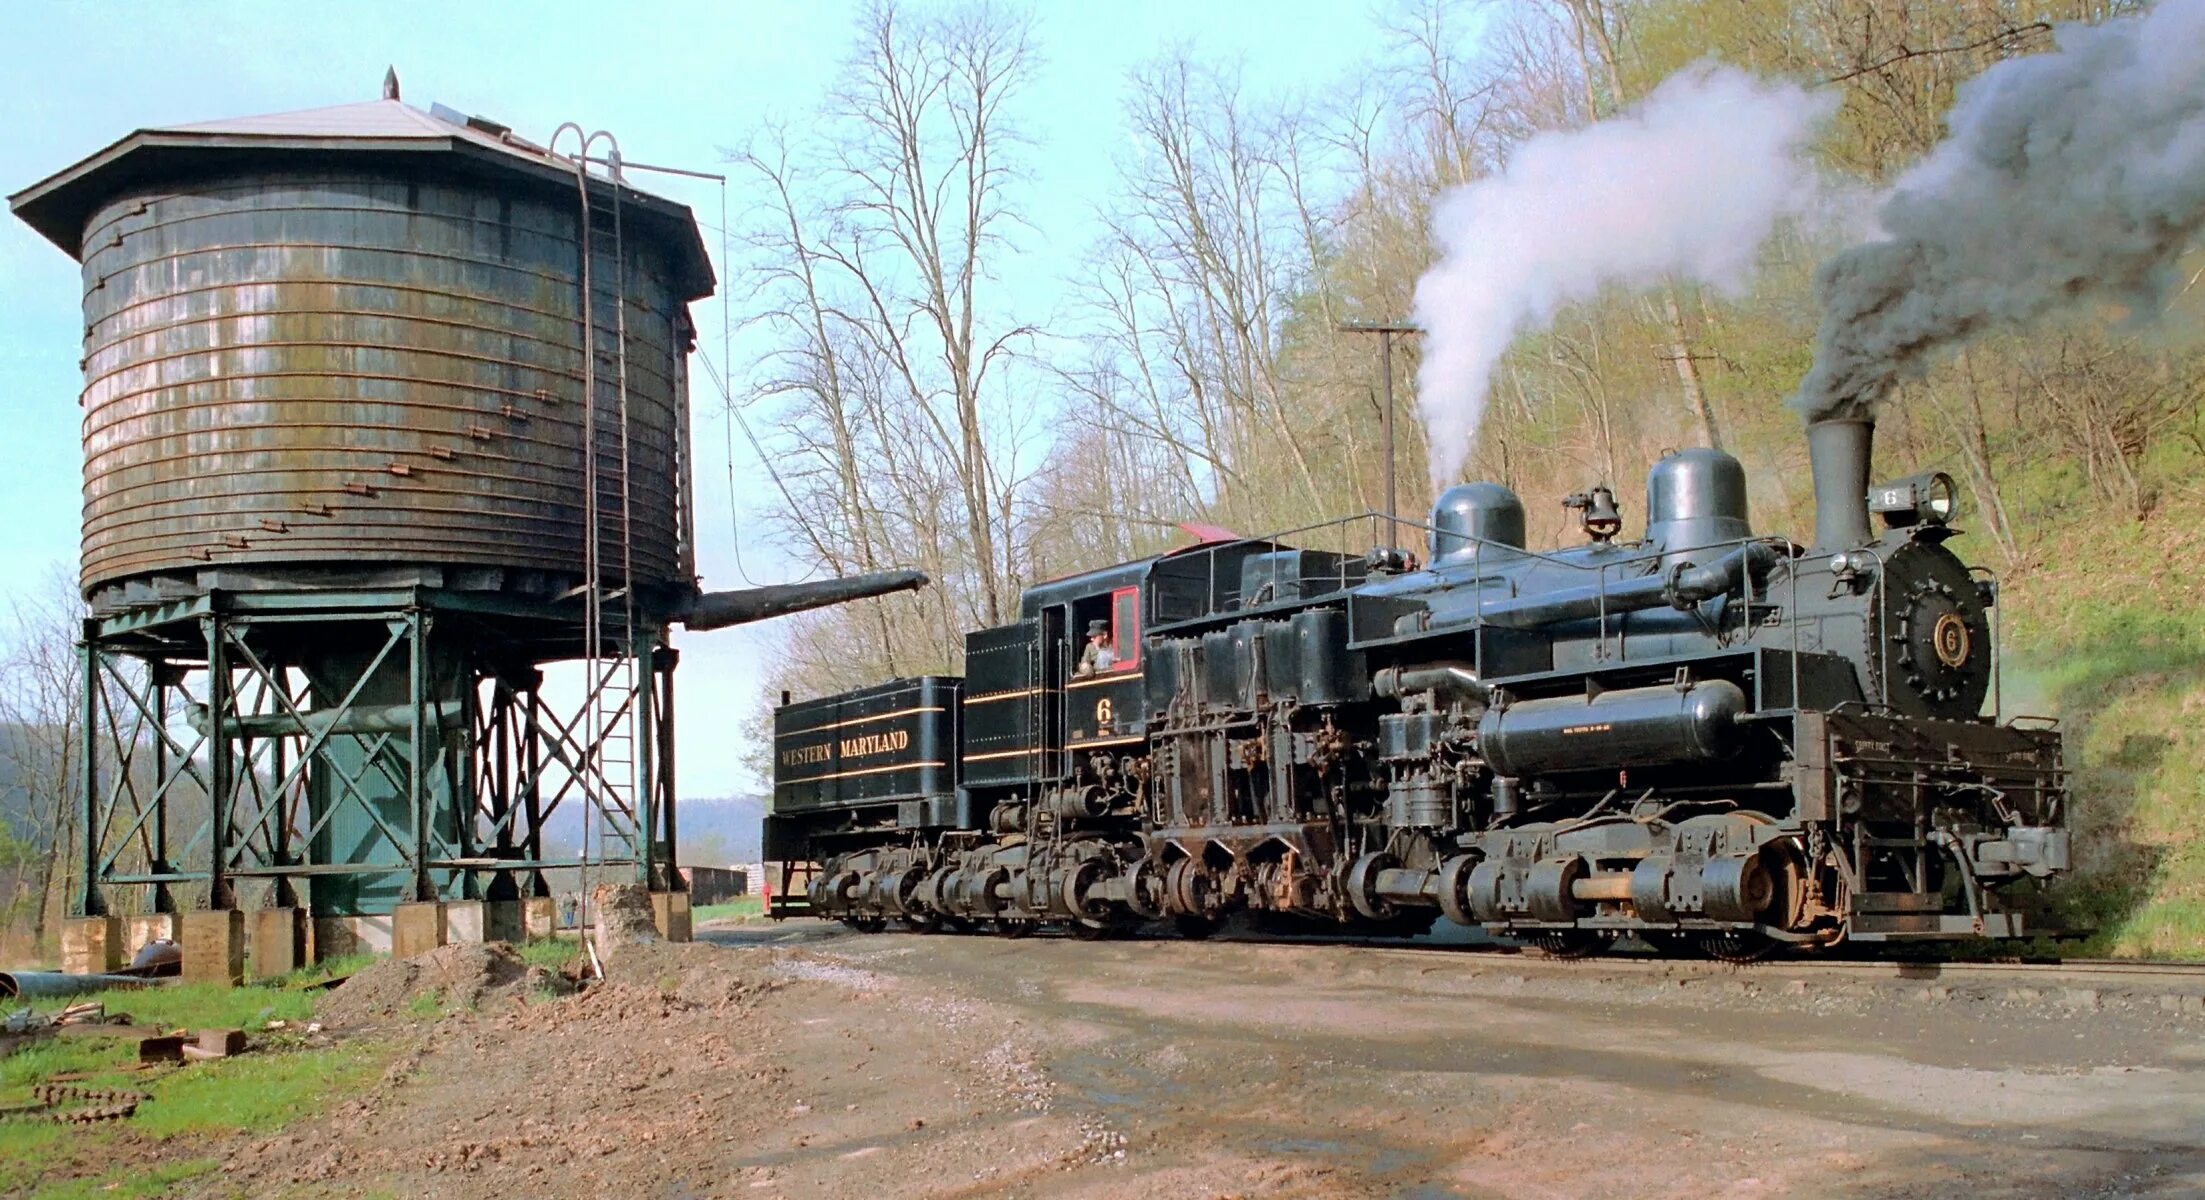 Western Maryland Railway паровоз. Американские паровозы 19 века. Старый поезд. Советский паровоз. Топливо паровозов